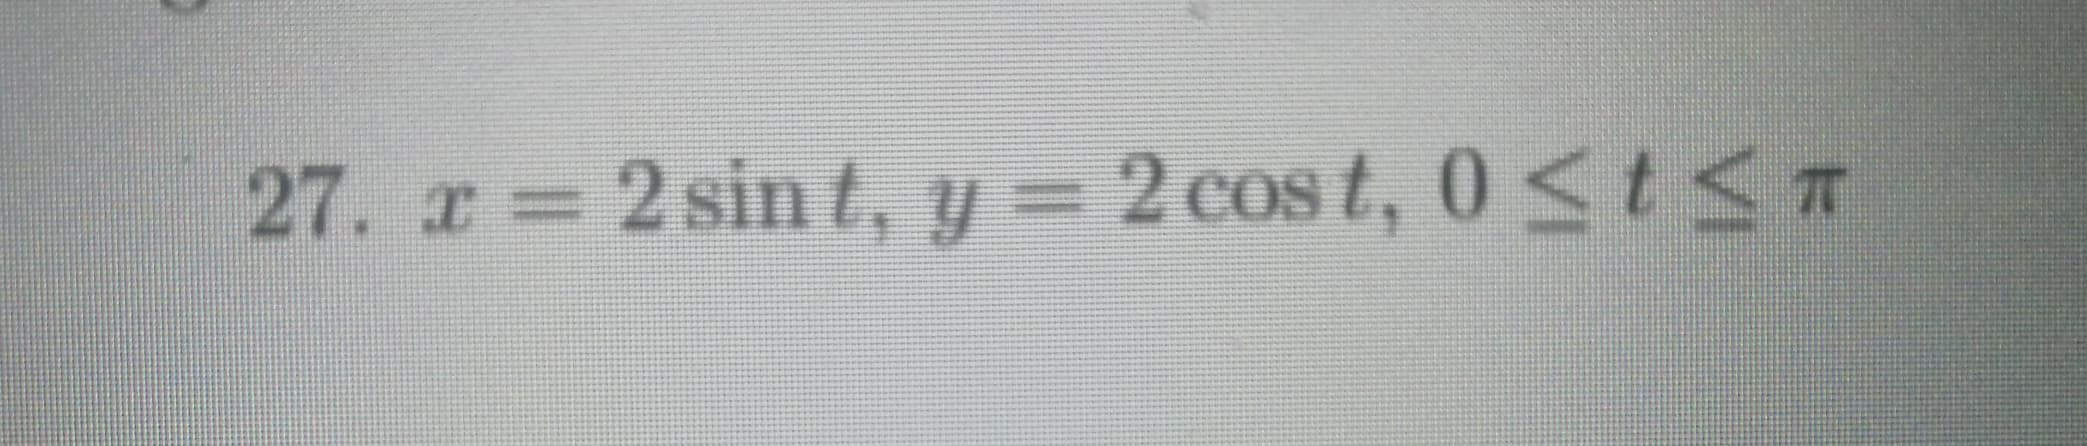 27. x 2 sin t, y = 2 cos t, 0S
